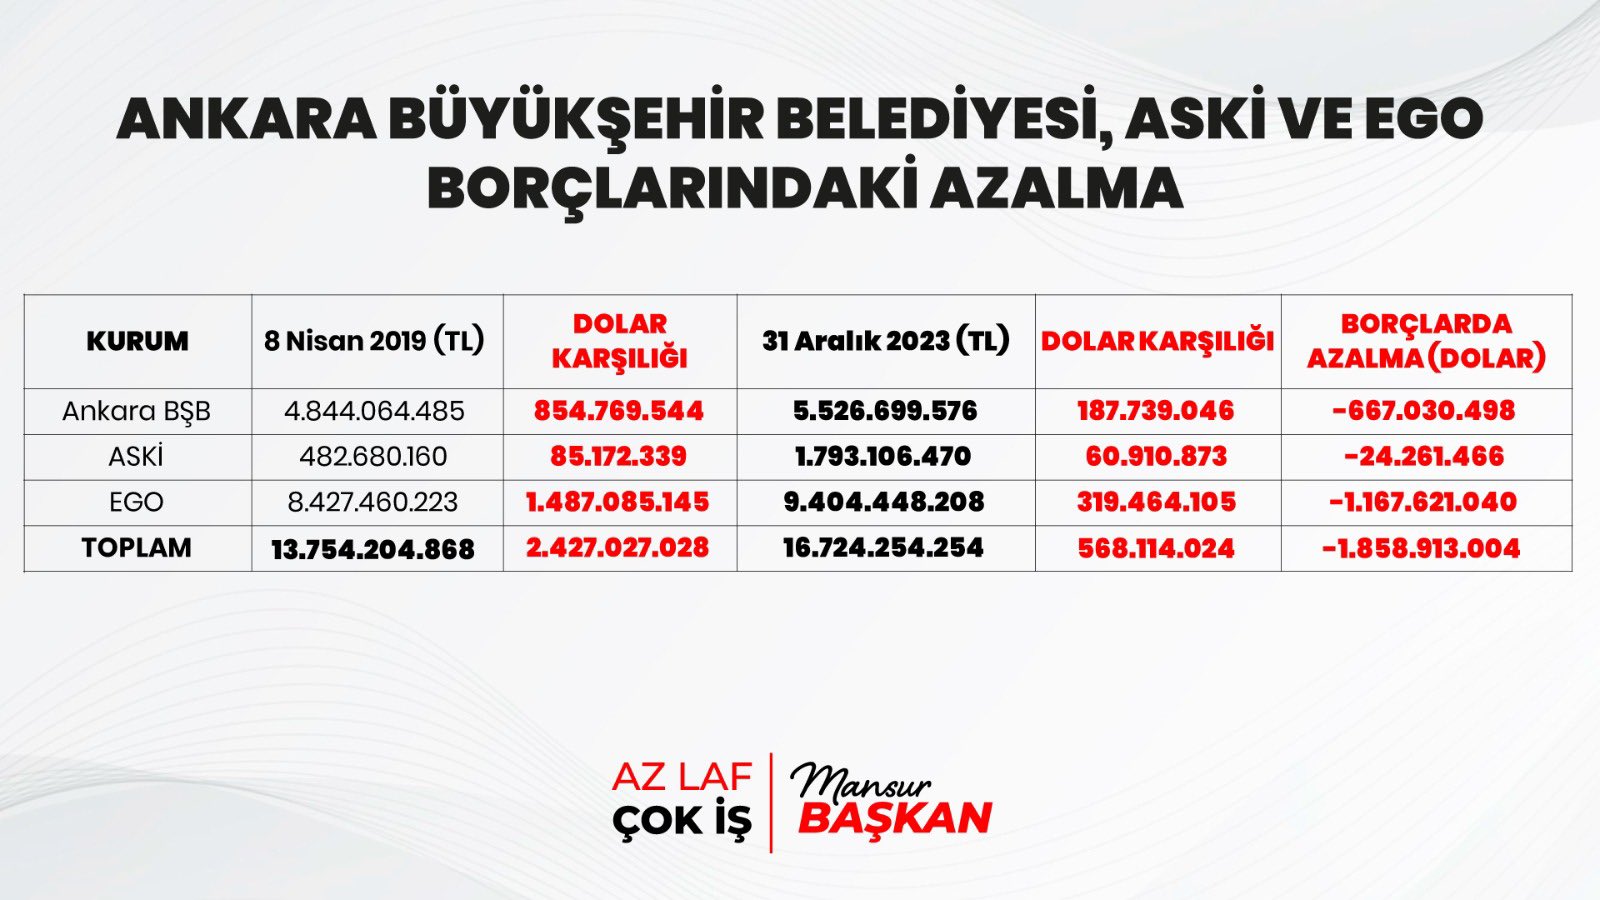 Fitch Ratings, Ankara Büyükşehir Belediyesi'ne en yüksek kredi notunu verdi